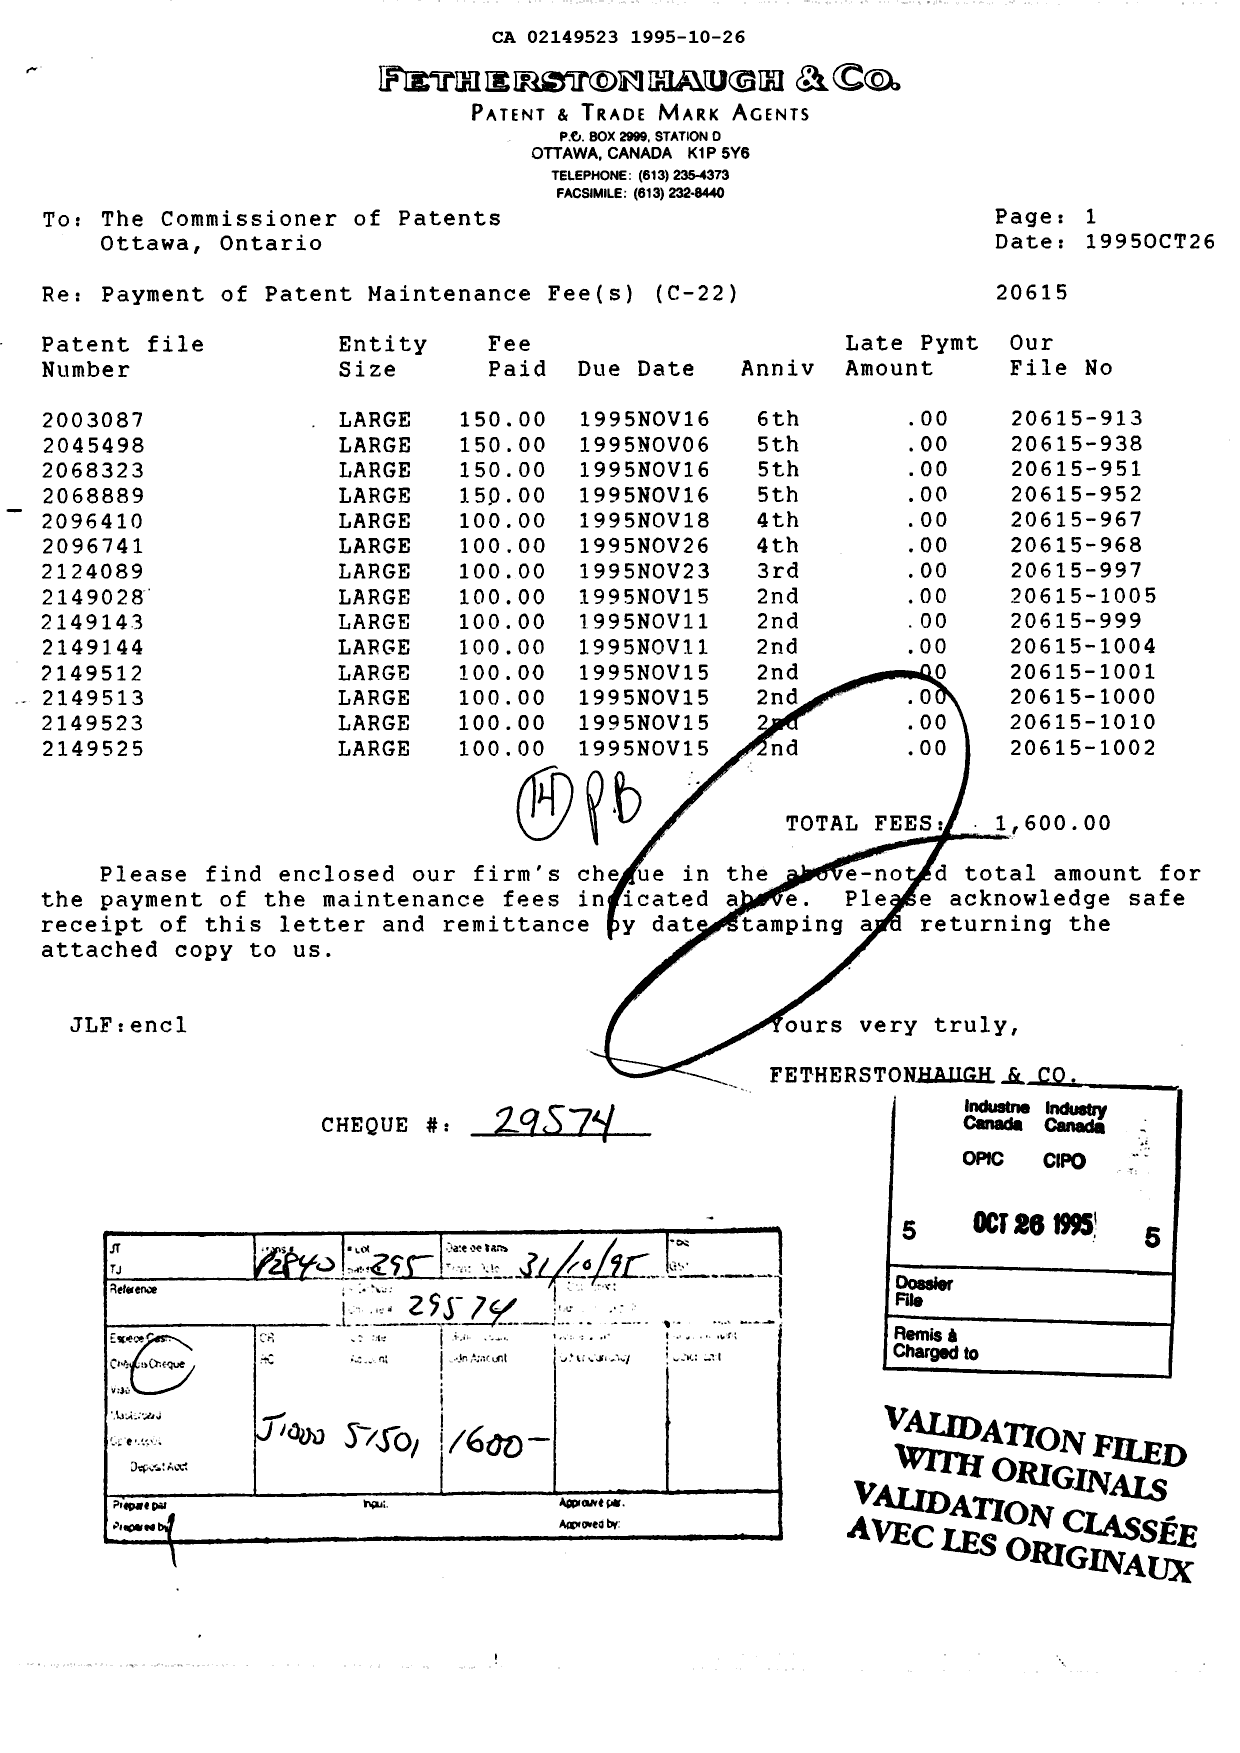 Document de brevet canadien 2149523. Taxes 19951026. Image 1 de 1